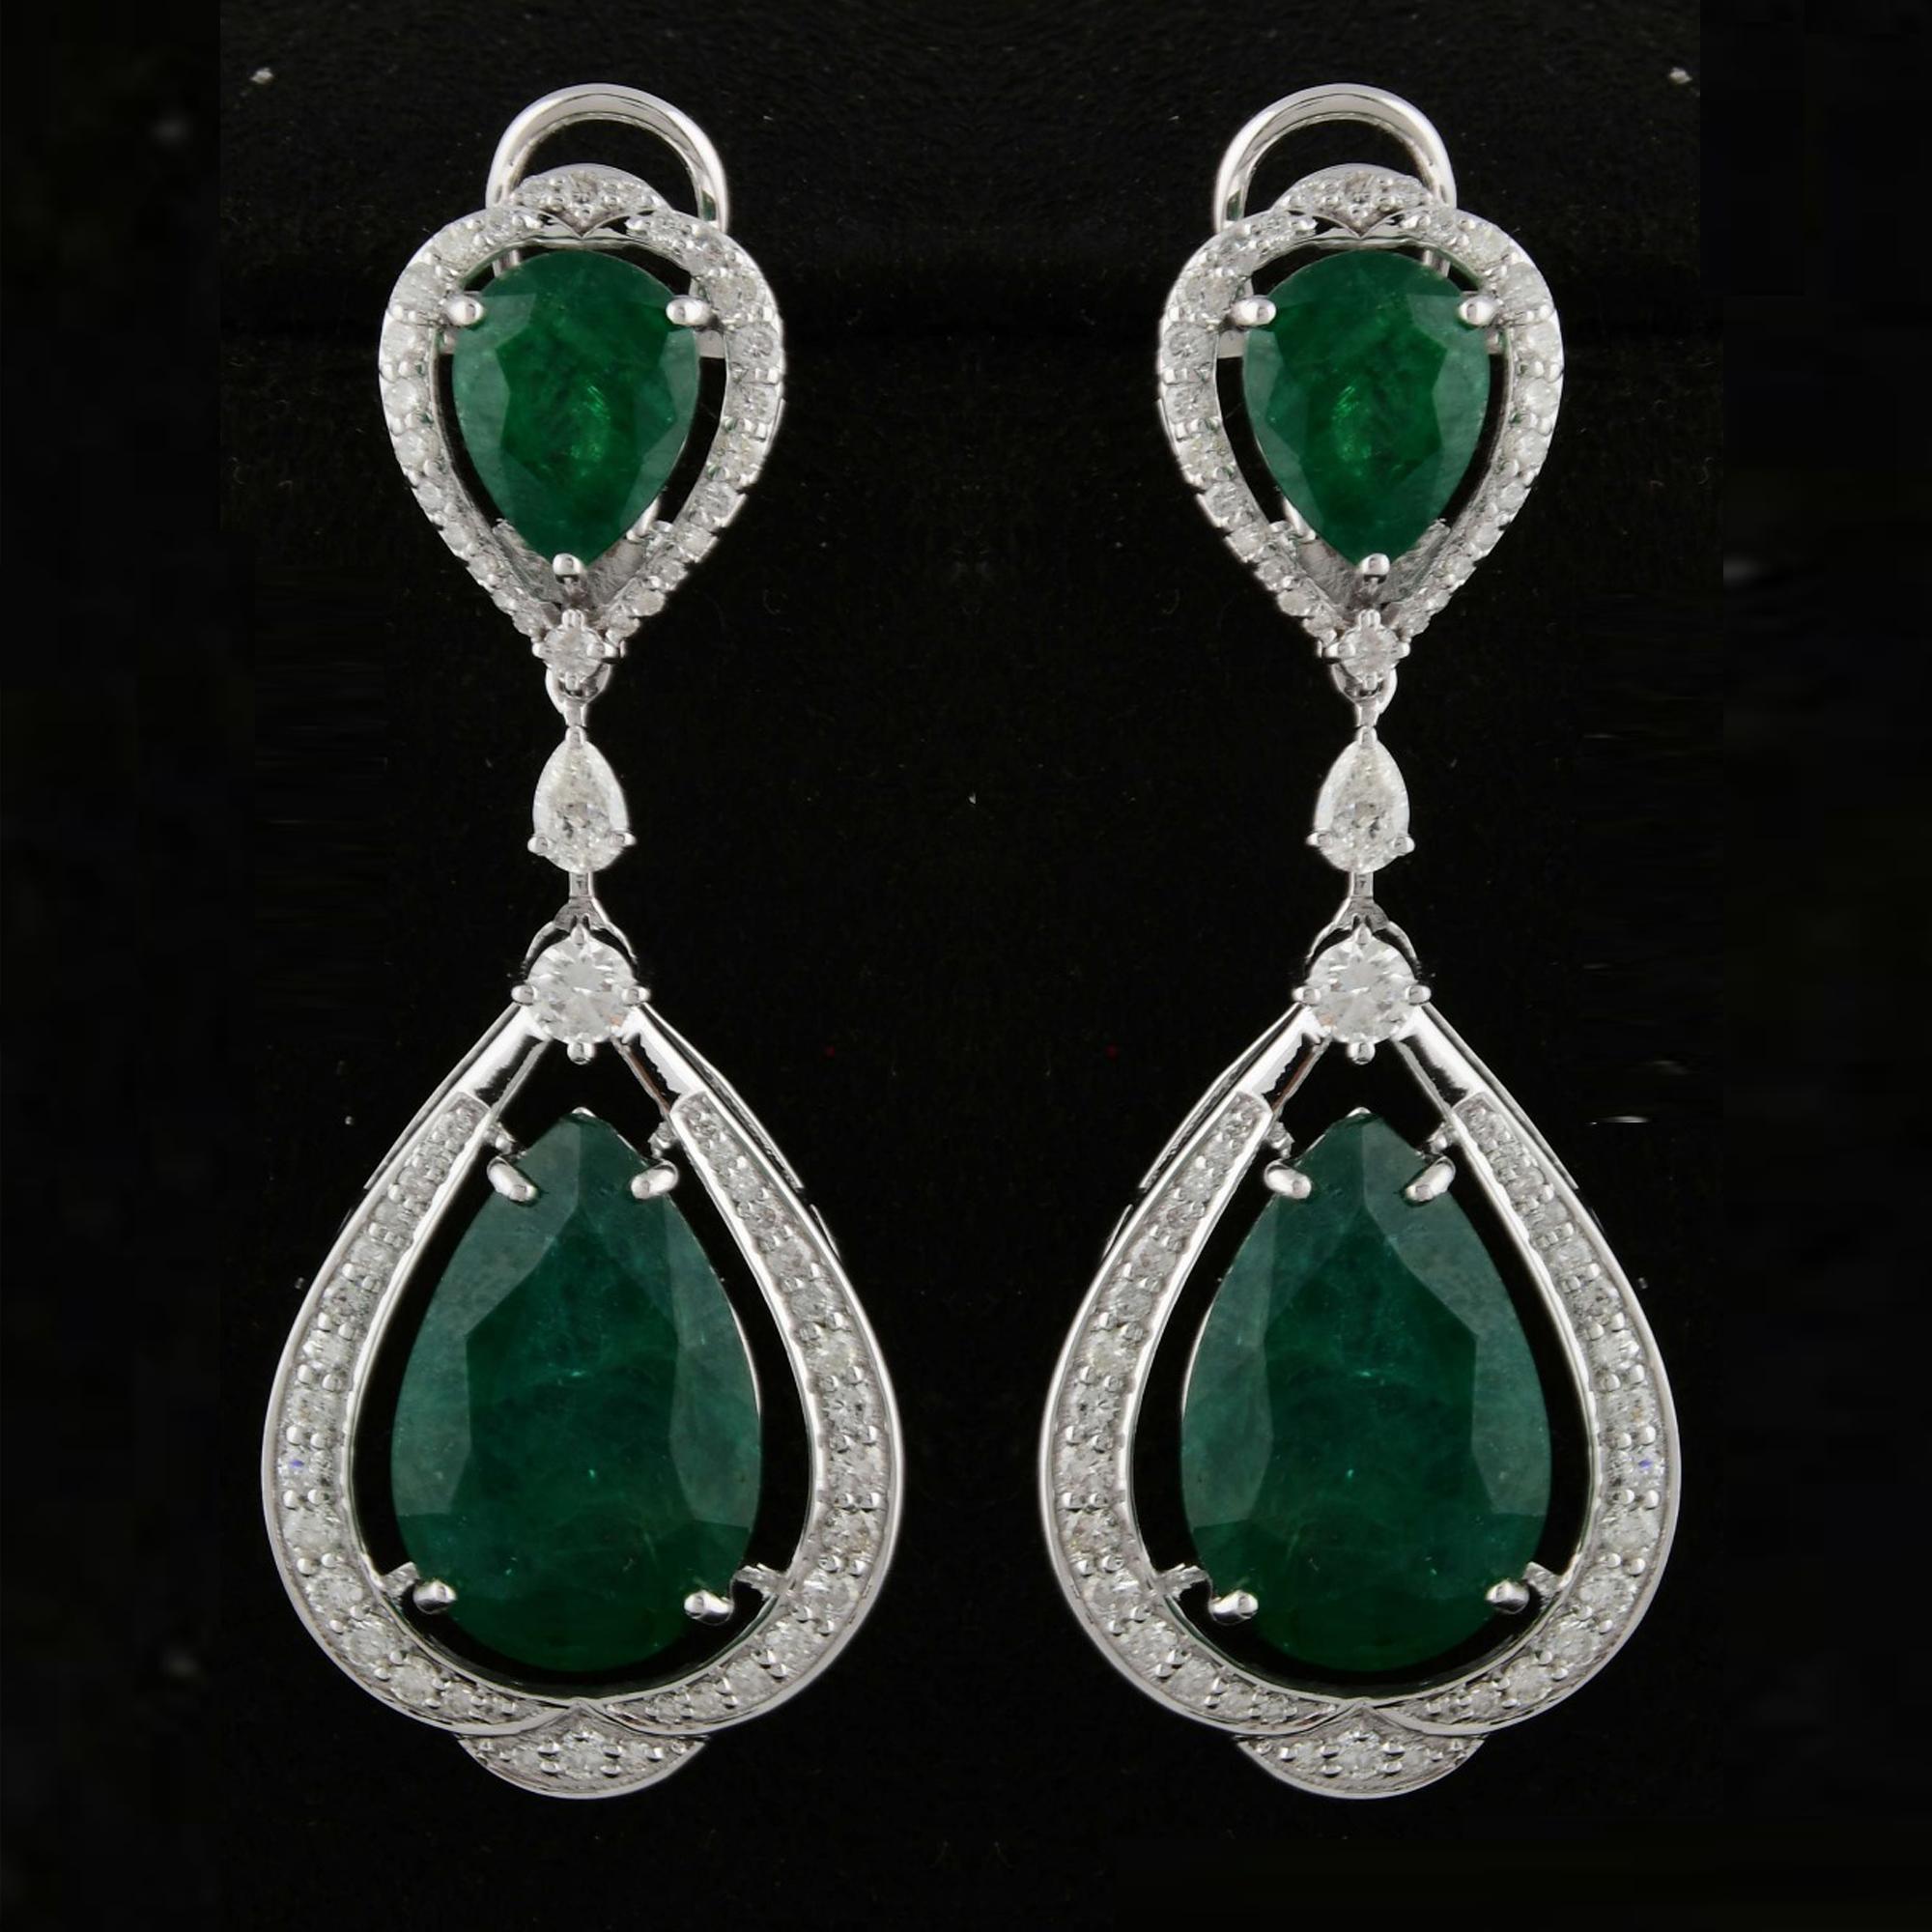 Pear Cut Zambian Emerald Gemstone Dangle Earrings Diamond 18 Karat White Gold Jewelry New For Sale